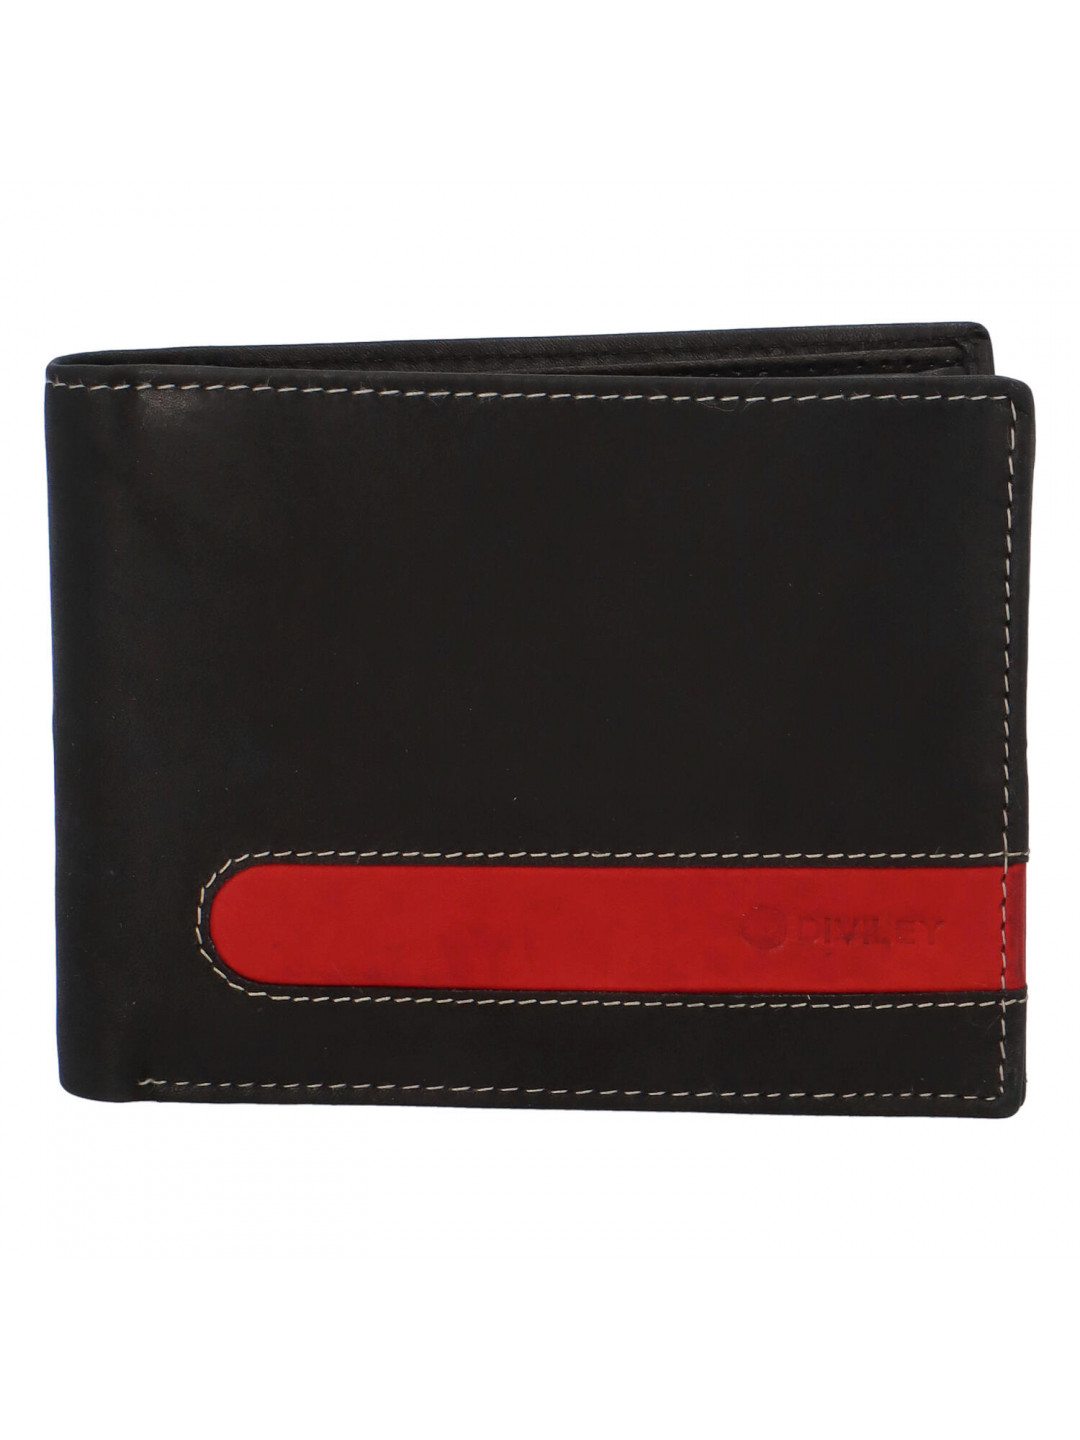 Pánská kožená peněženka černá – Diviley 1631 RED